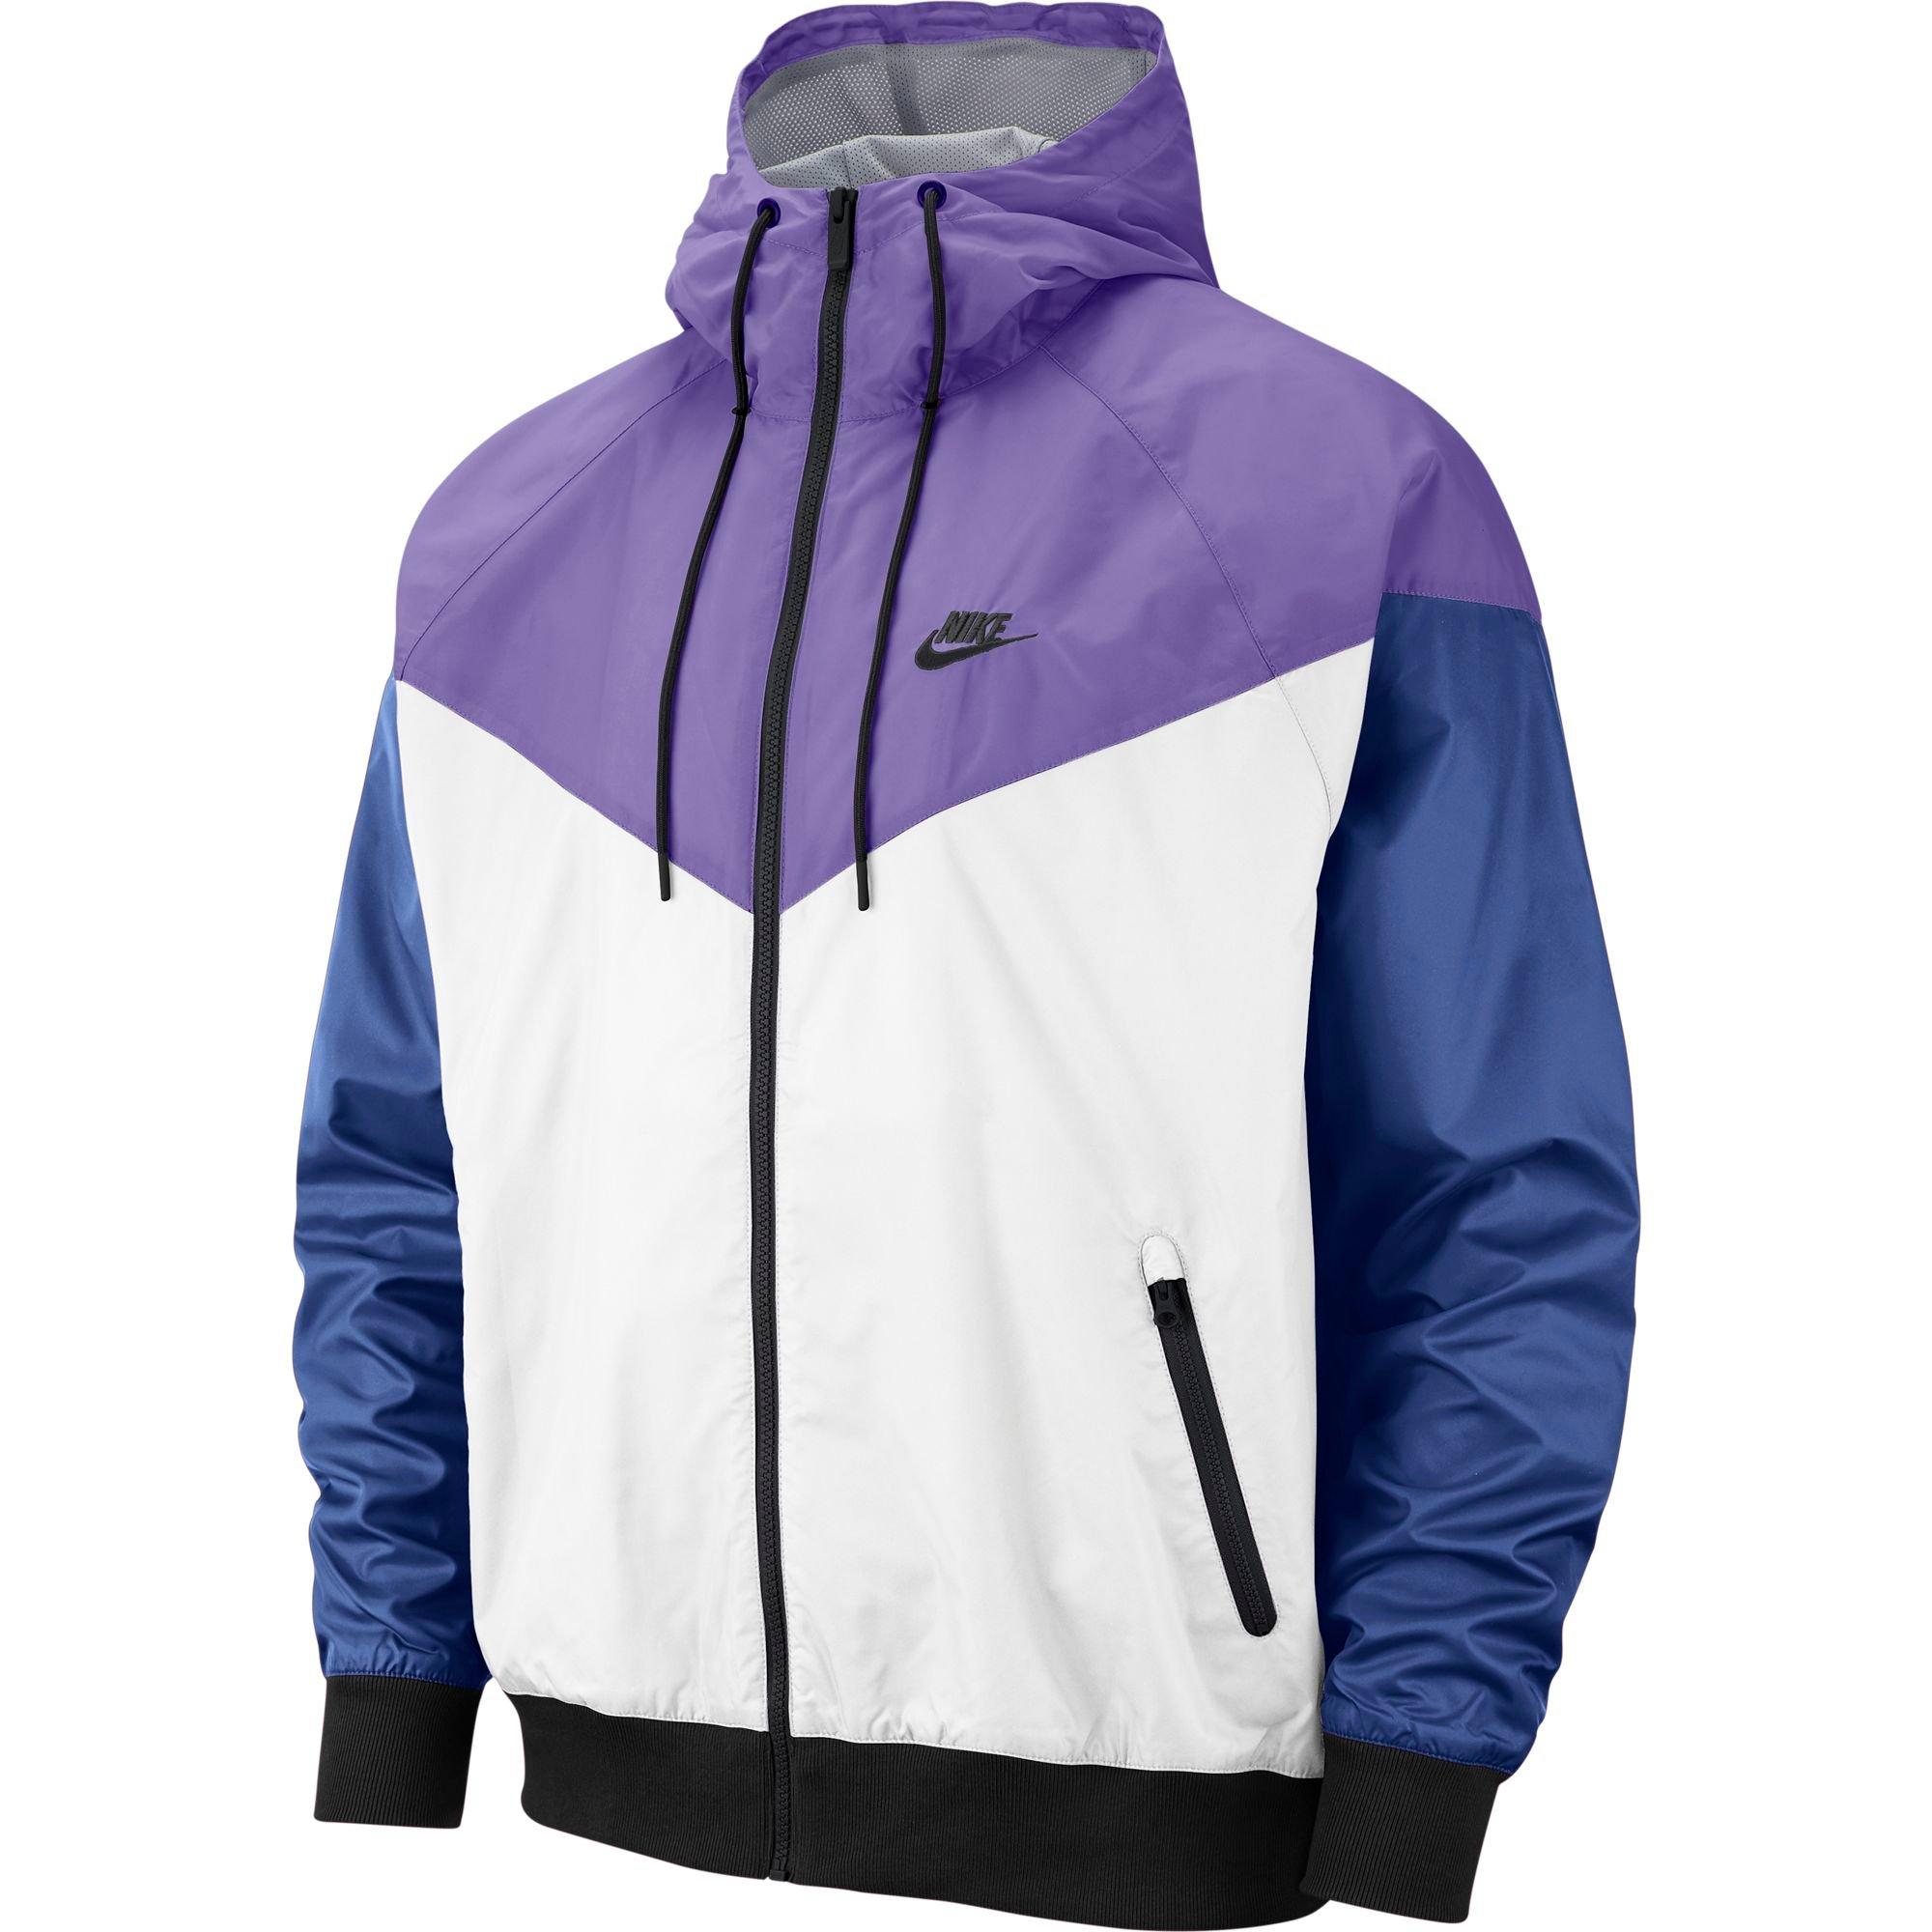 Windrunner Jacket - White/Purple/Black 